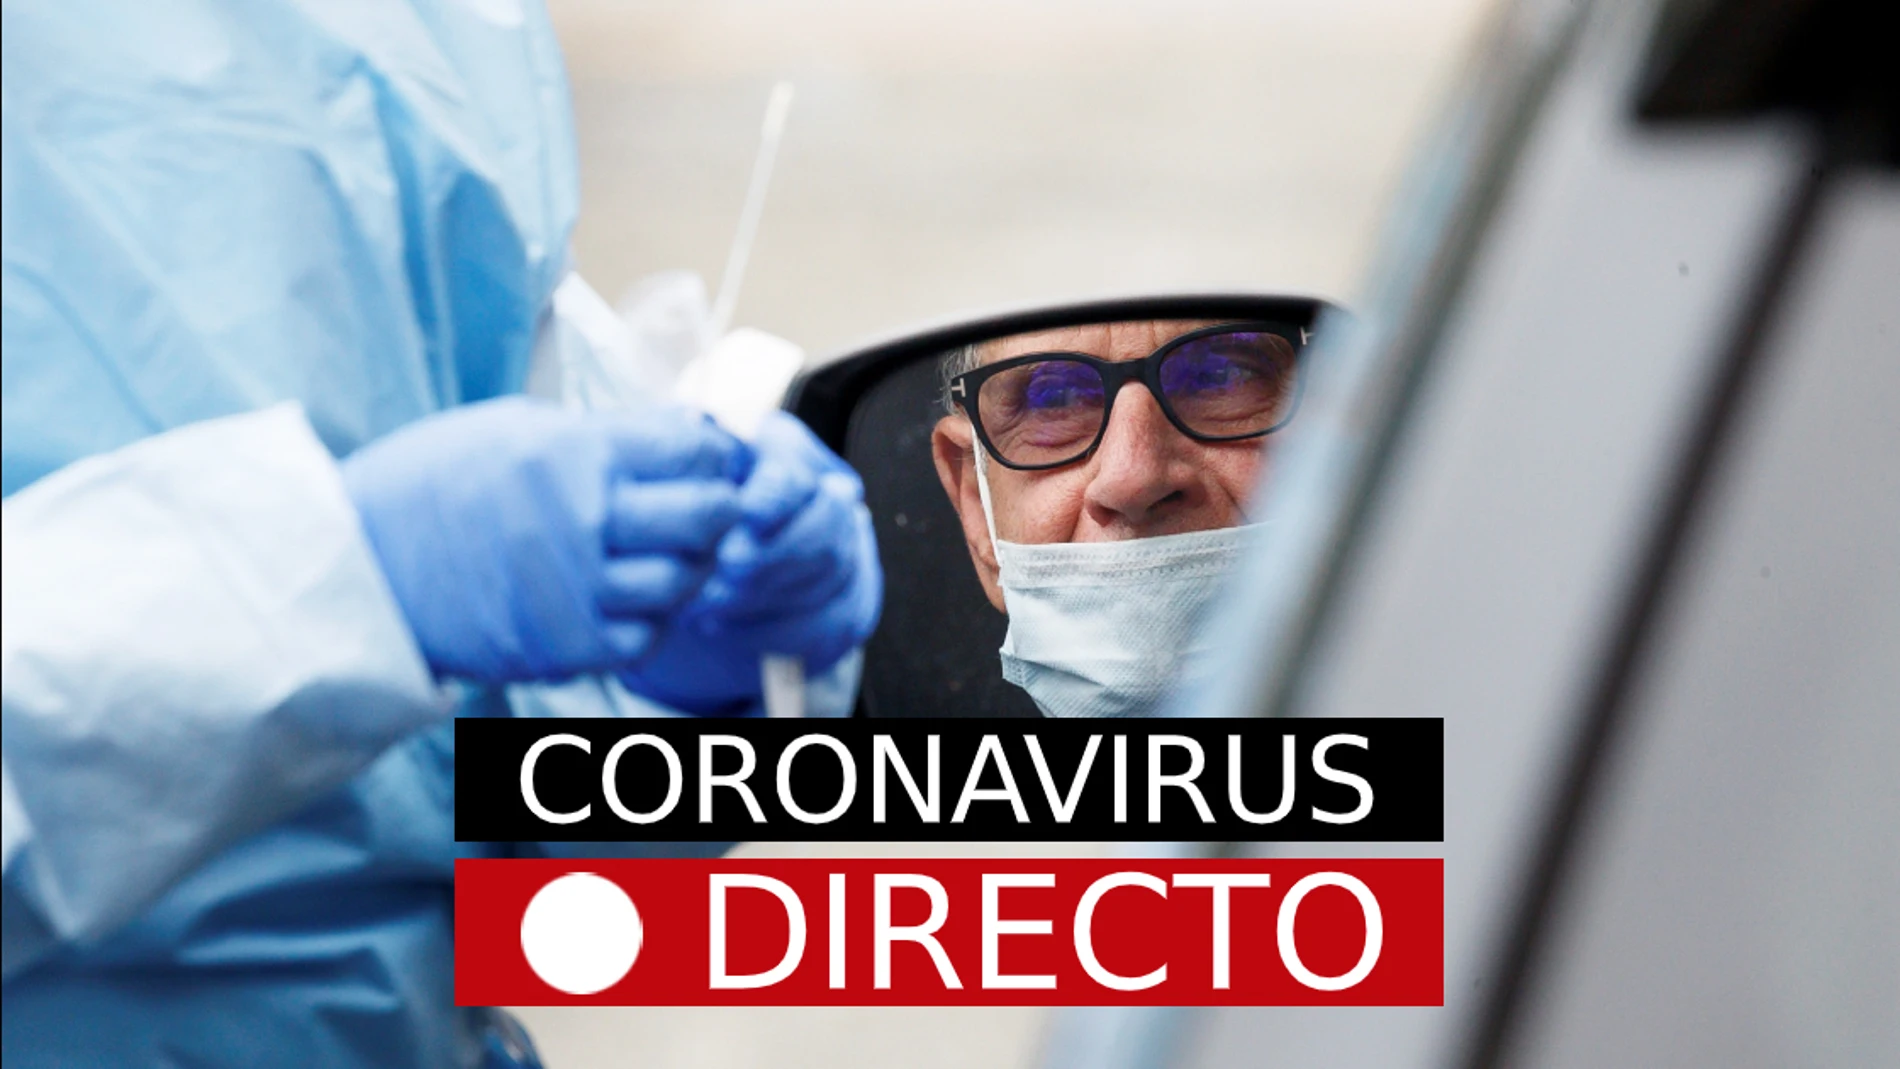 La última hora del coronavirus en España y en el mundo, en directo en laSexta.com